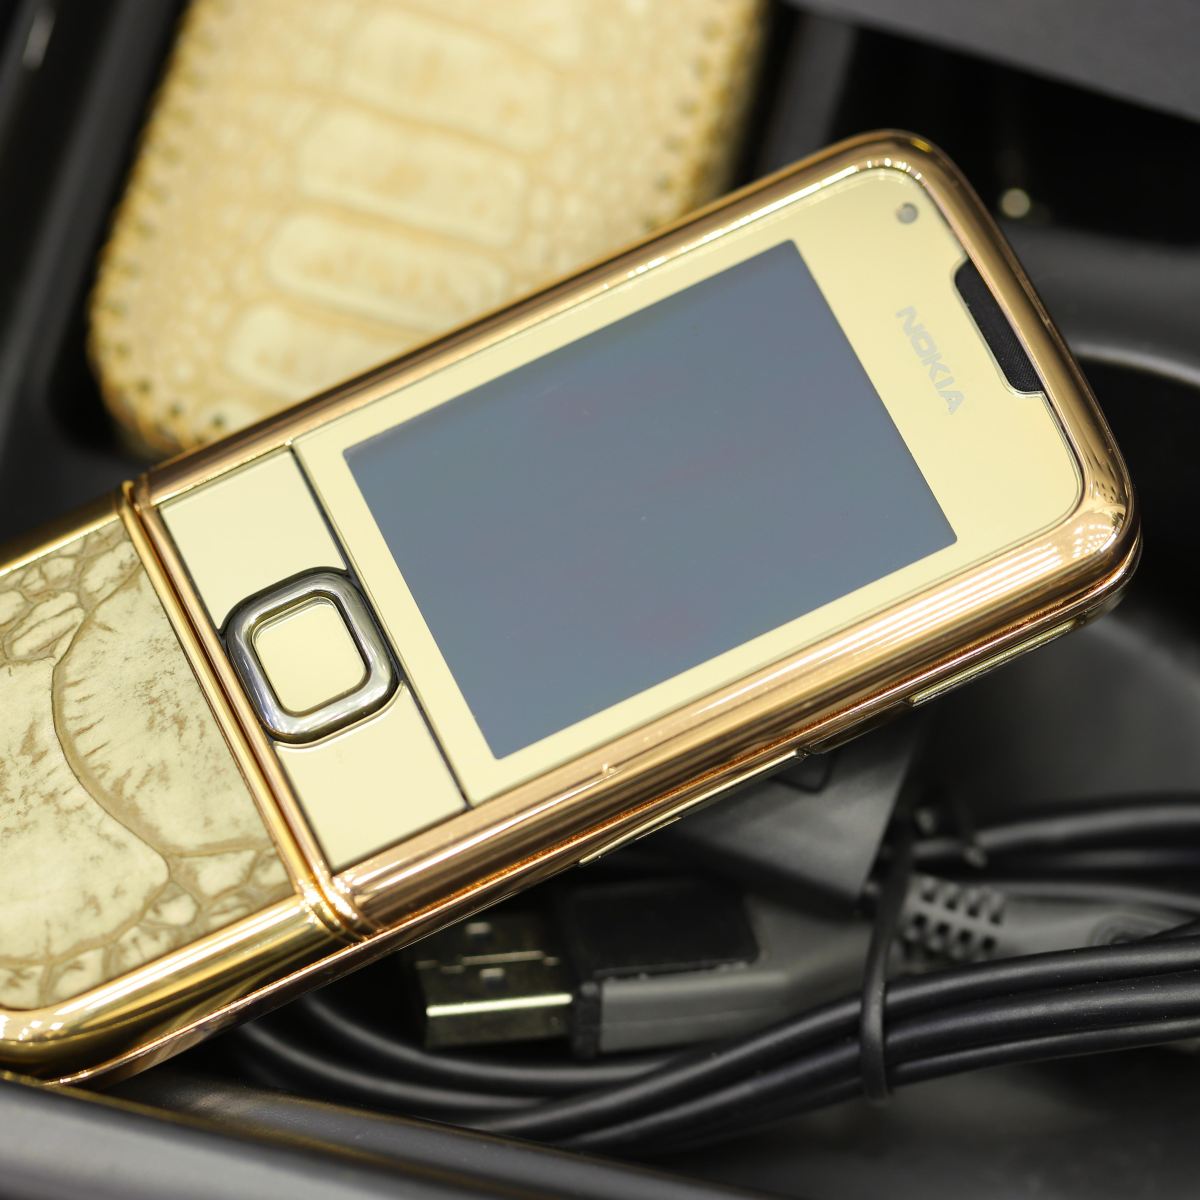 Nokia 8800 Rose Gold: Chỉ với một cái nhìn đầu tiên, bạn sẽ bị thu hút bởi chiếc điện thoại Nokia 8800 Rose Gold đầy quyến rũ này. Với màu vàng hồng sang trọng và thiết kế đẳng cấp, chiếc điện thoại này là một của hàng độc đáo cho những người yêu thích sự độc đáo và đẳng cấp.